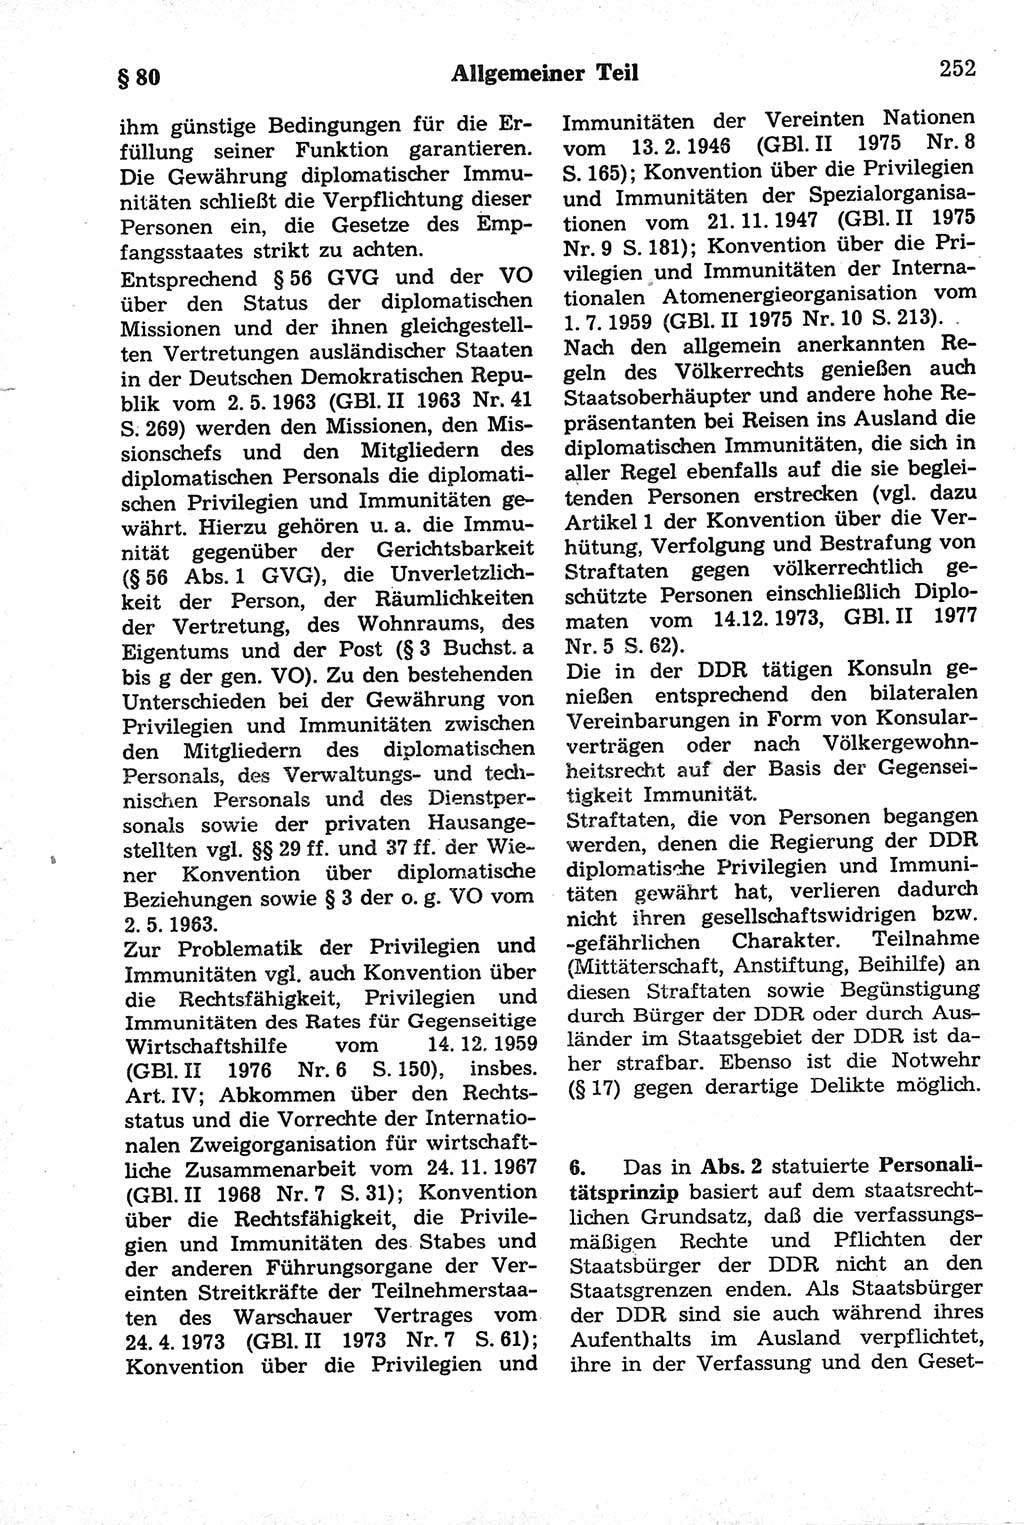 Strafrecht der Deutschen Demokratischen Republik (DDR), Kommentar zum Strafgesetzbuch (StGB) 1981, Seite 252 (Strafr. DDR Komm. StGB 1981, S. 252)